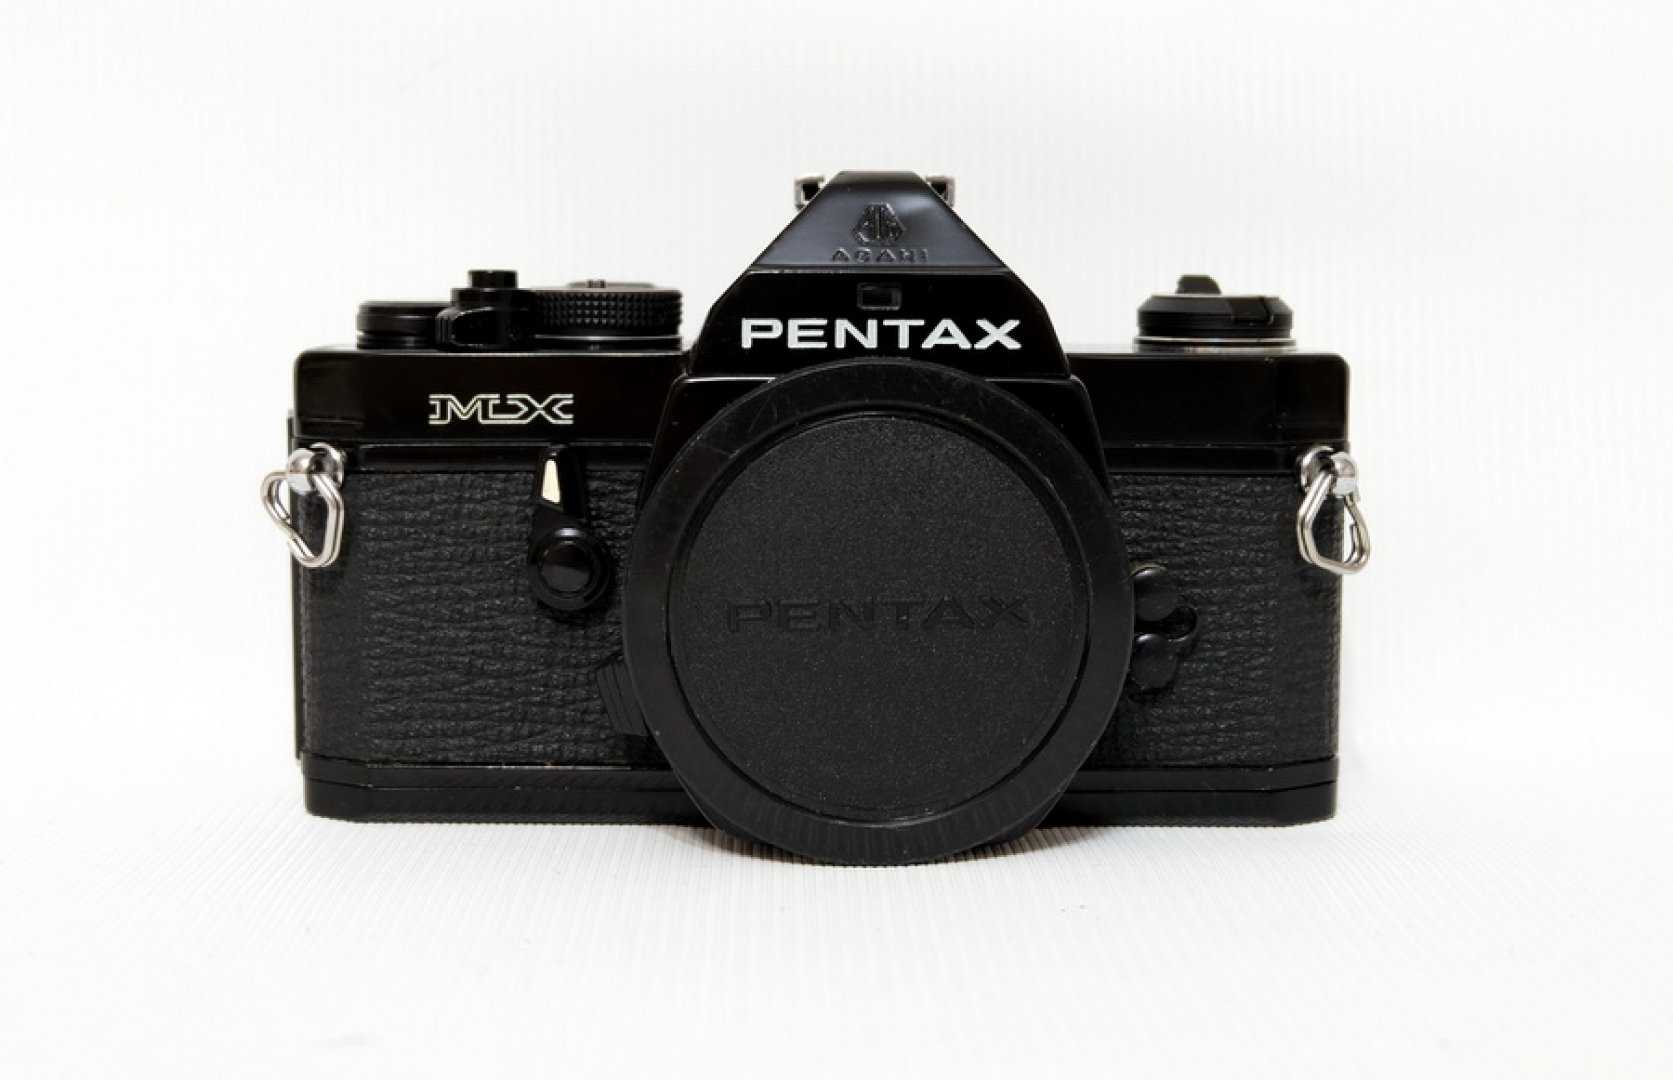 Pentax mx-1 - купить , скидки, цена, отзывы, обзор, характеристики - фотоаппараты цифровые